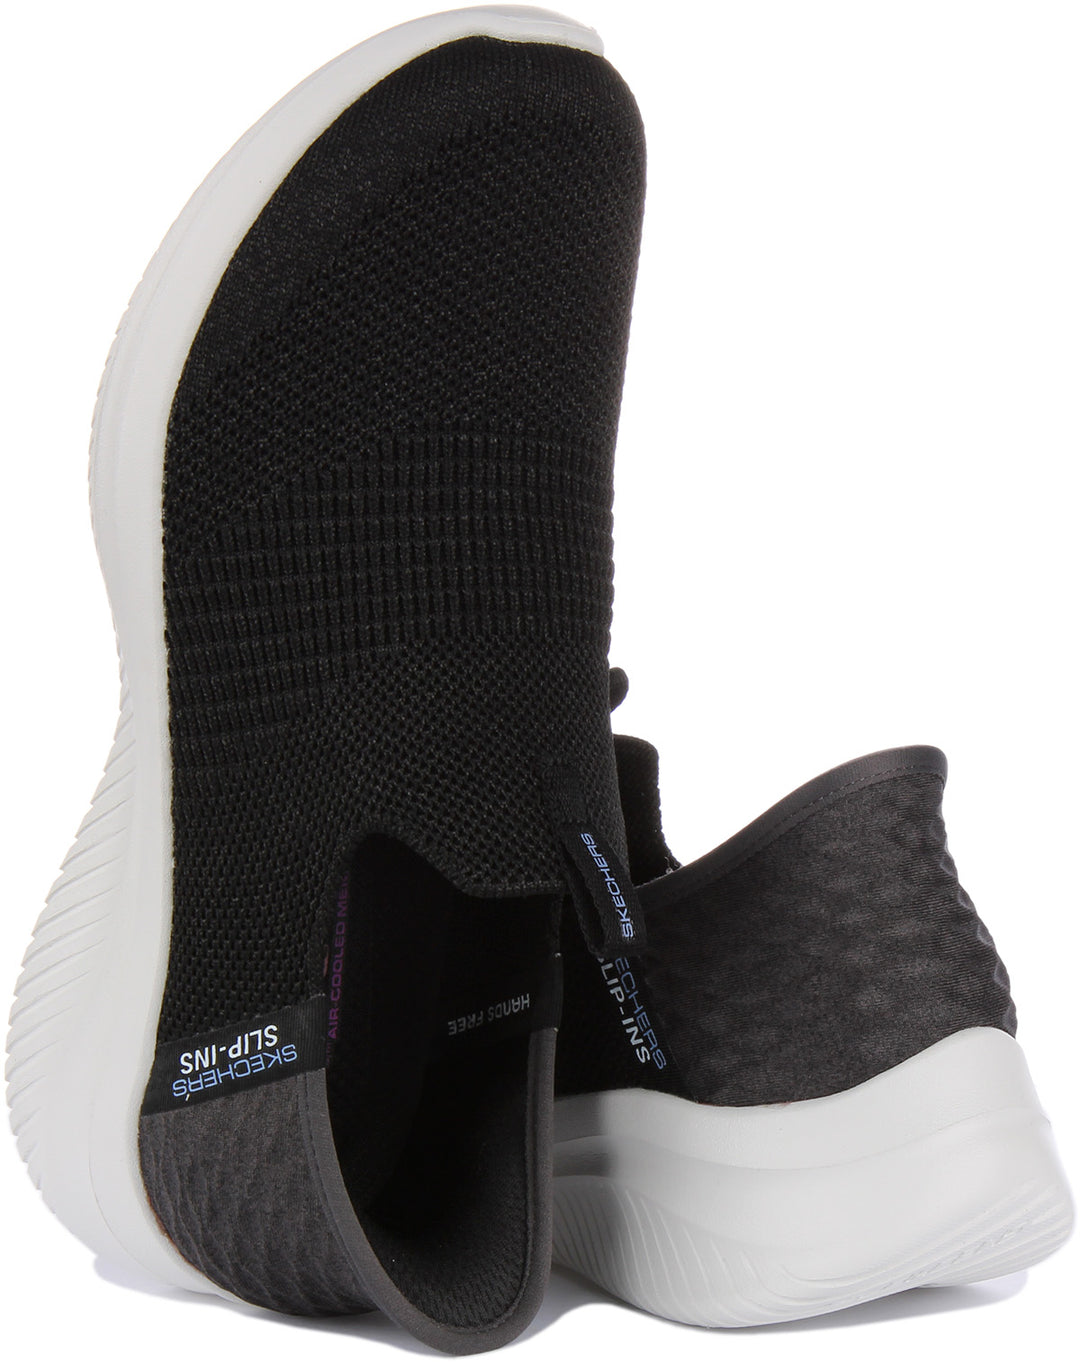 Skechers Ultra Flex 3.0 In Black White For Women